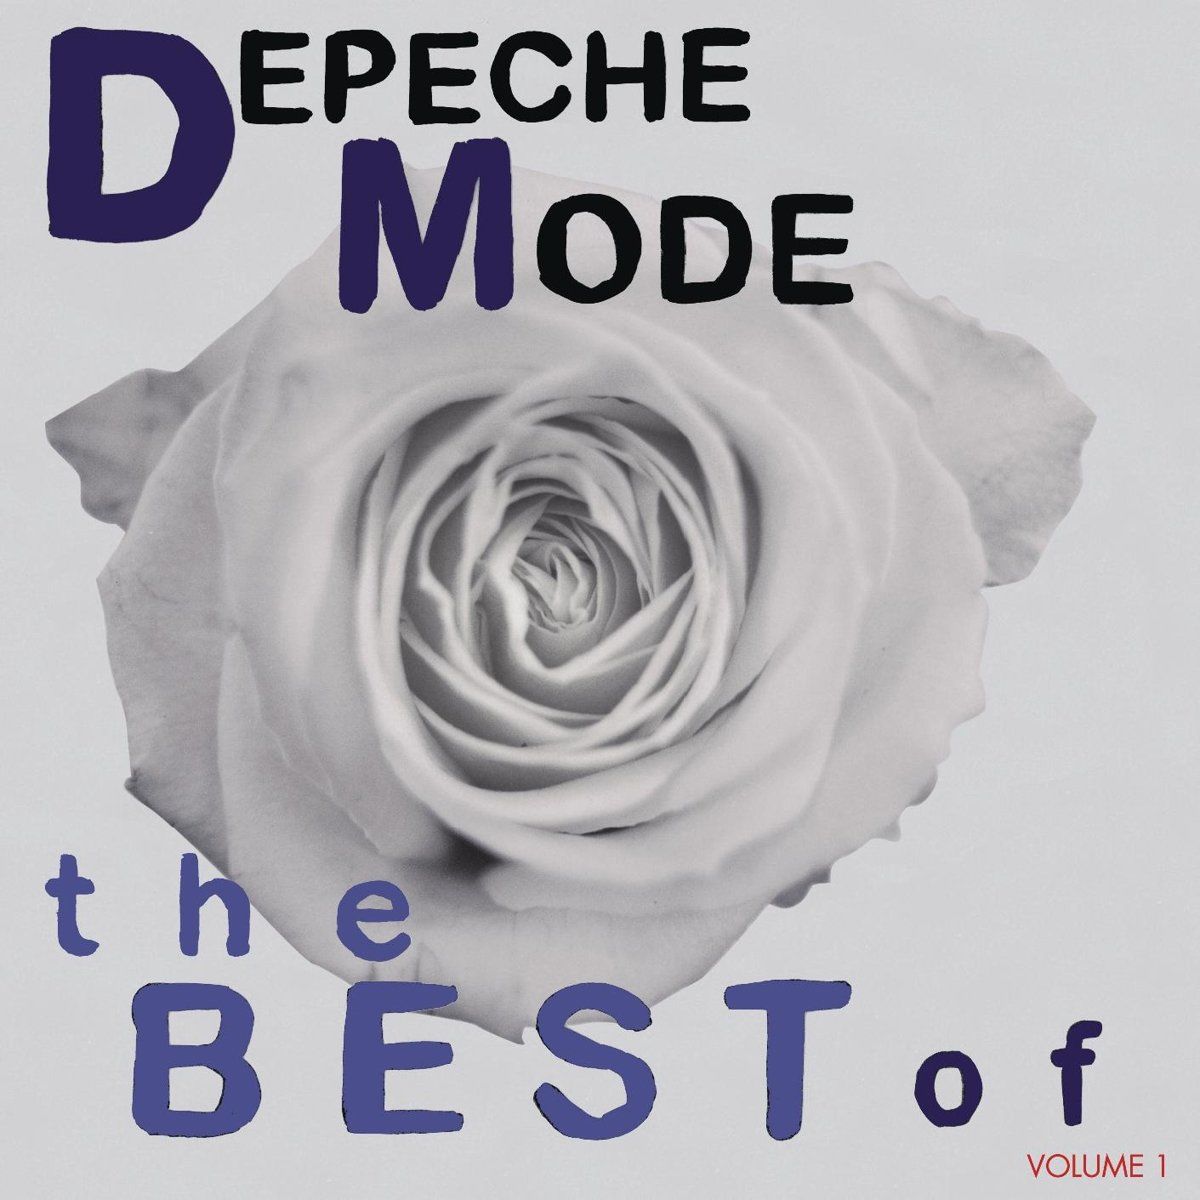 DEPECHE MODE - THE BEST OF VOLUME 1 (2007) - 2017 EDITION 3xLP SIFIR PLAK